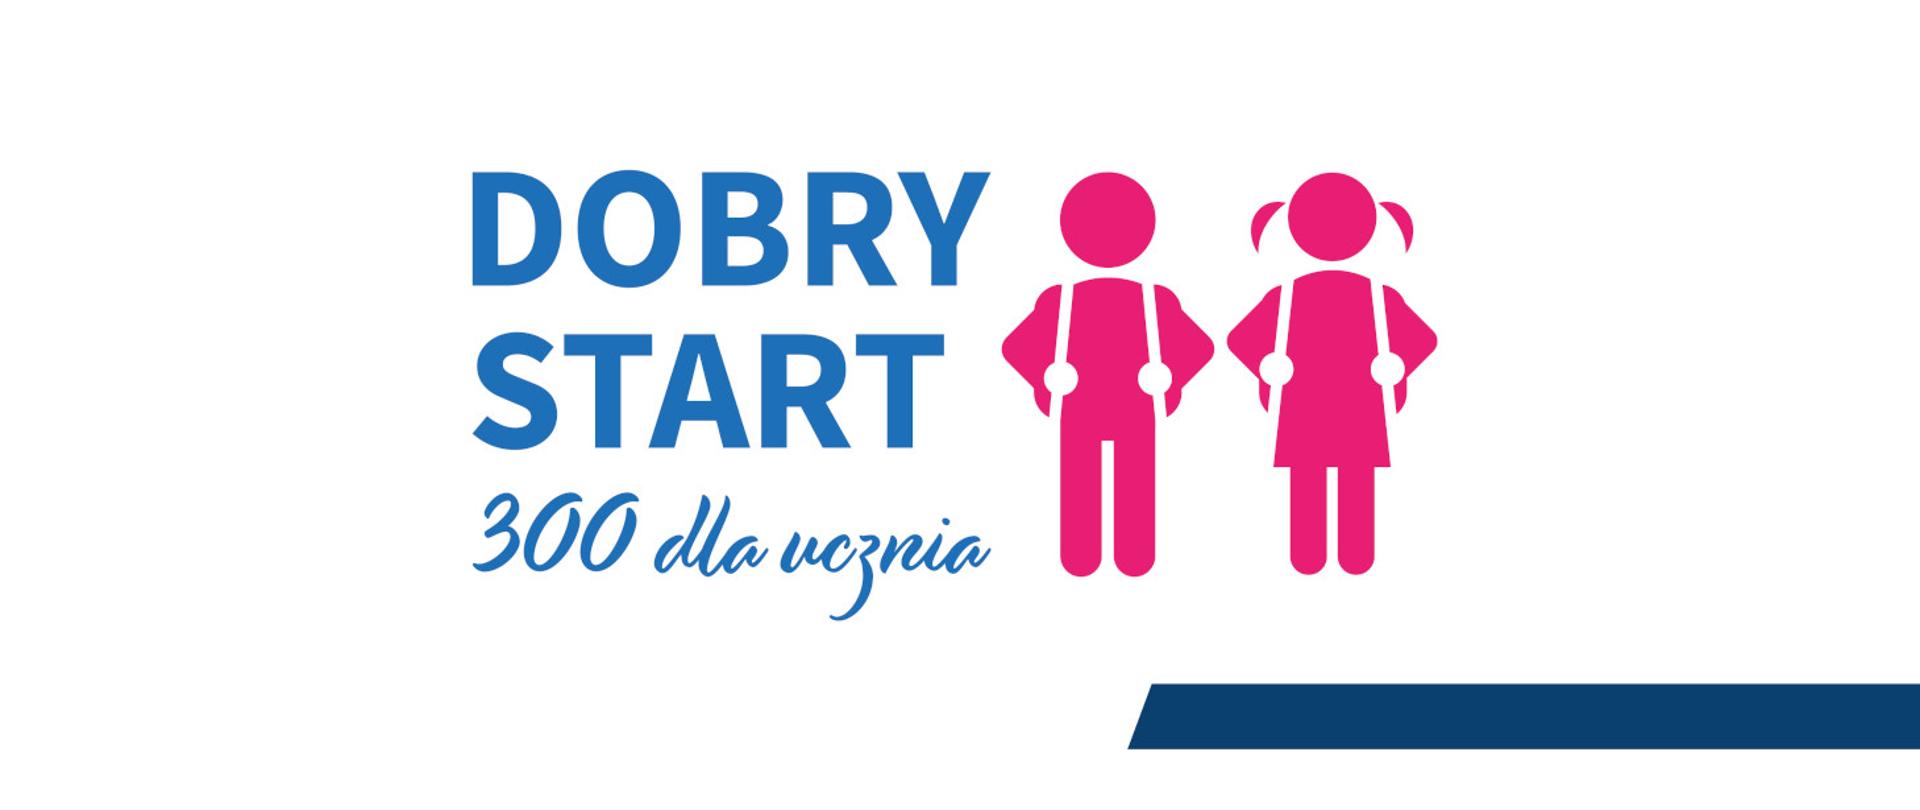 Napis Dobry Start 300 dla ucznia na niebiesko obok w kolorze różowym rysunki ucznia i uczennicy